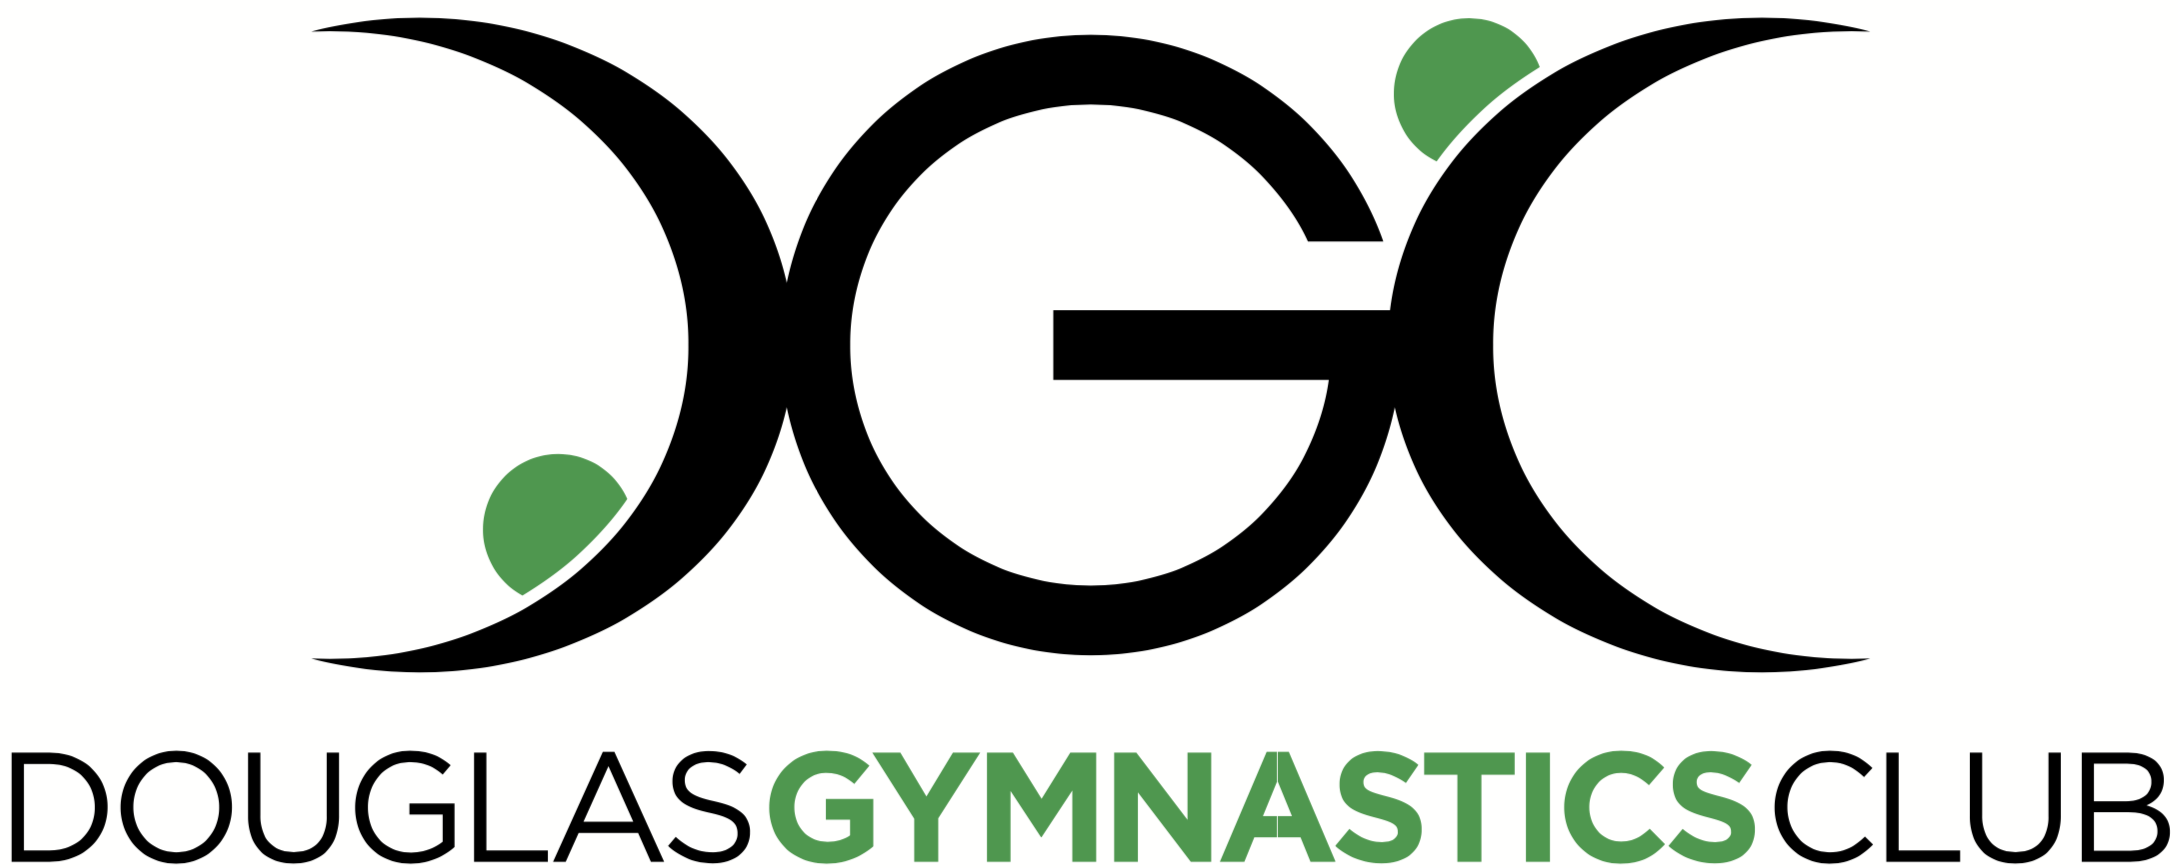 DGC Logo - Douglas Gymnastics Club – Homepage for Douglas Gymnastics Club, Cork ...